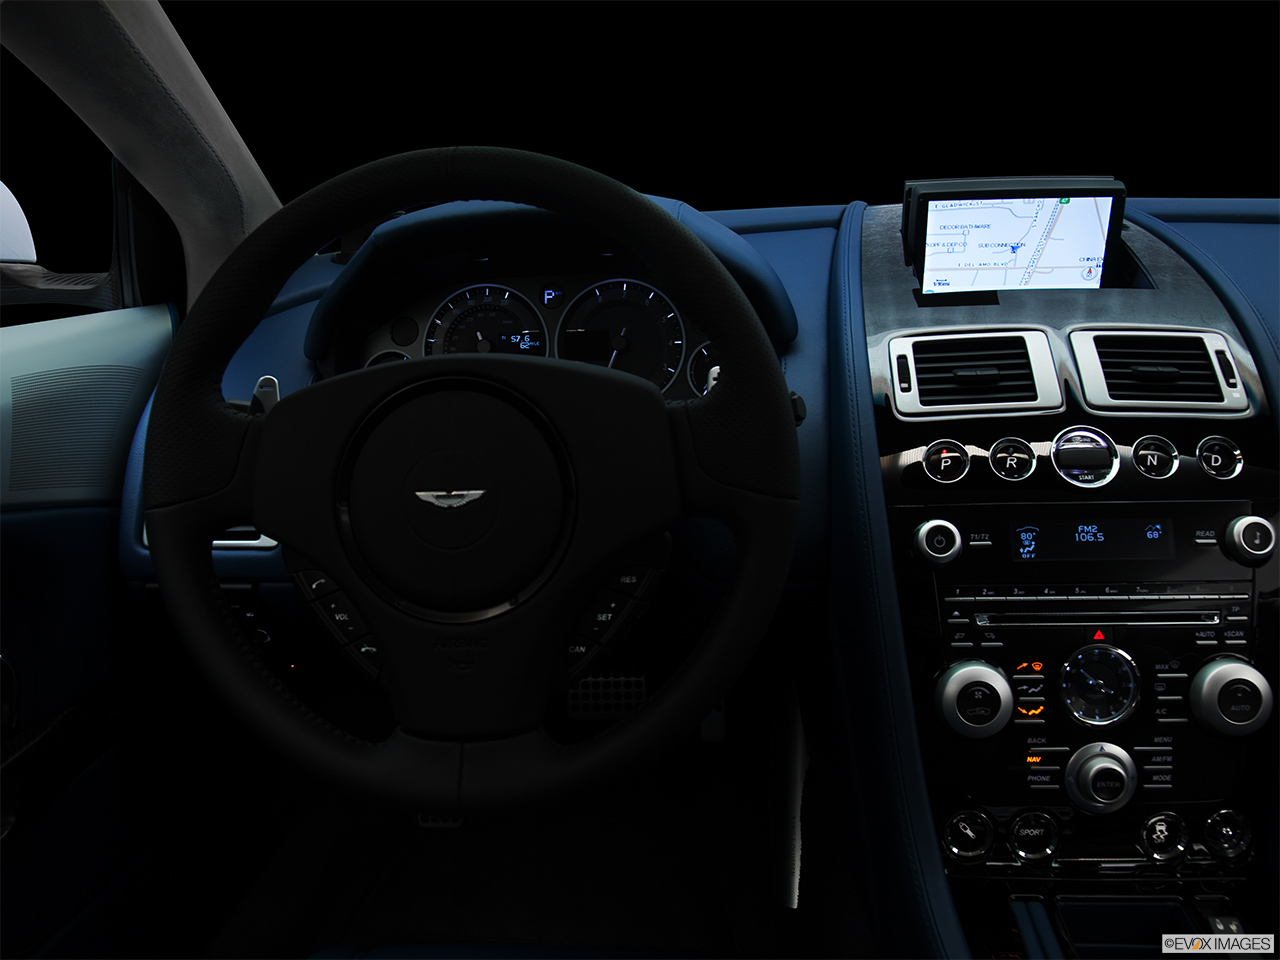 2011 Aston Martin DBS Volante Centered wide dash shot - "night" shot. 